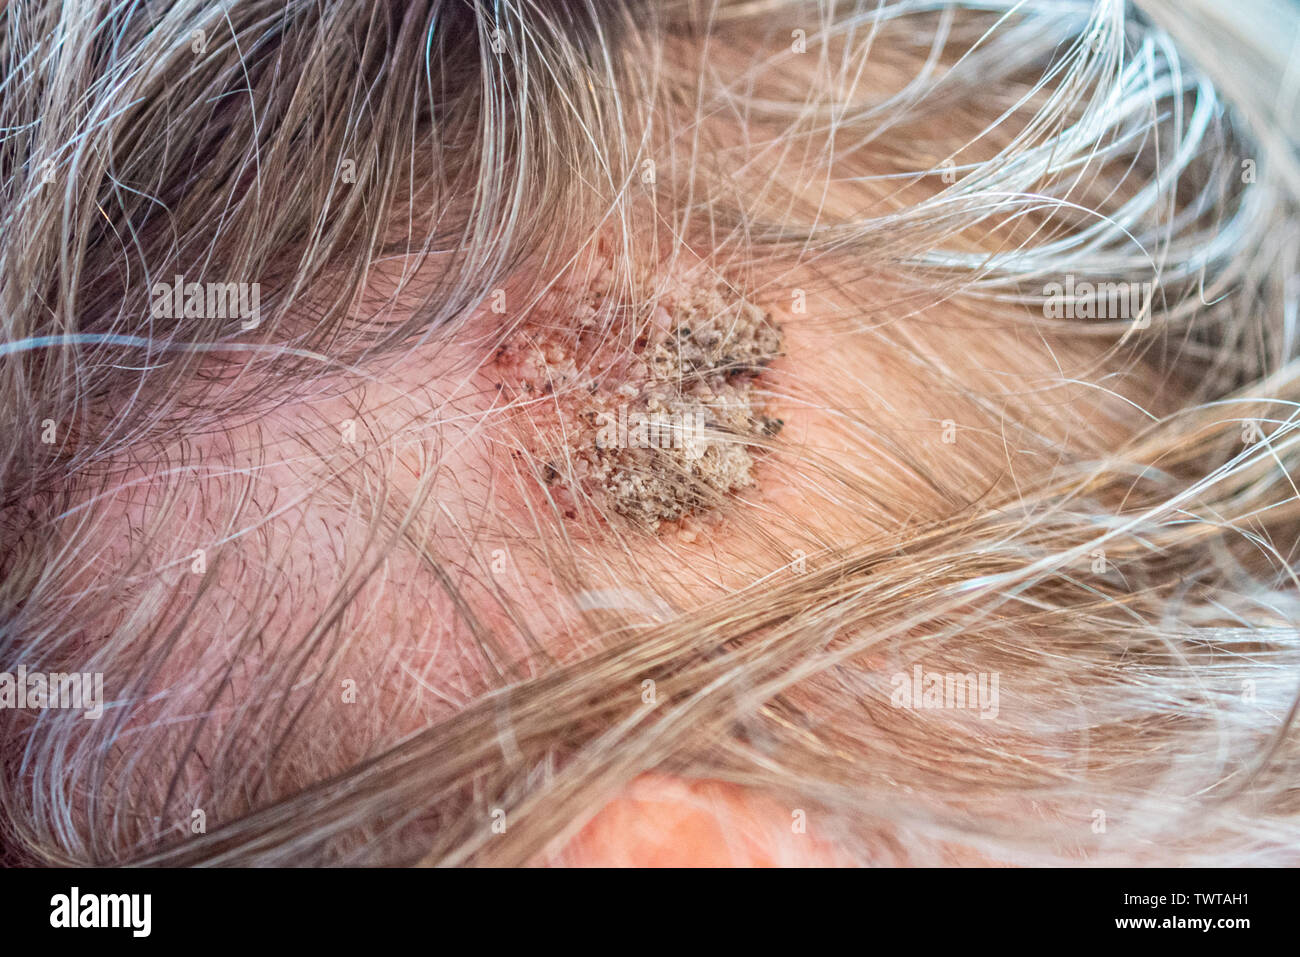 Cheratosi seborroica tumore cutaneo benigno su un cuoio capelluto maschio con un aspetto irregolare. Lesione della testa. Verruca grande come la crescita in linea di capelli. Condizione medica Foto Stock